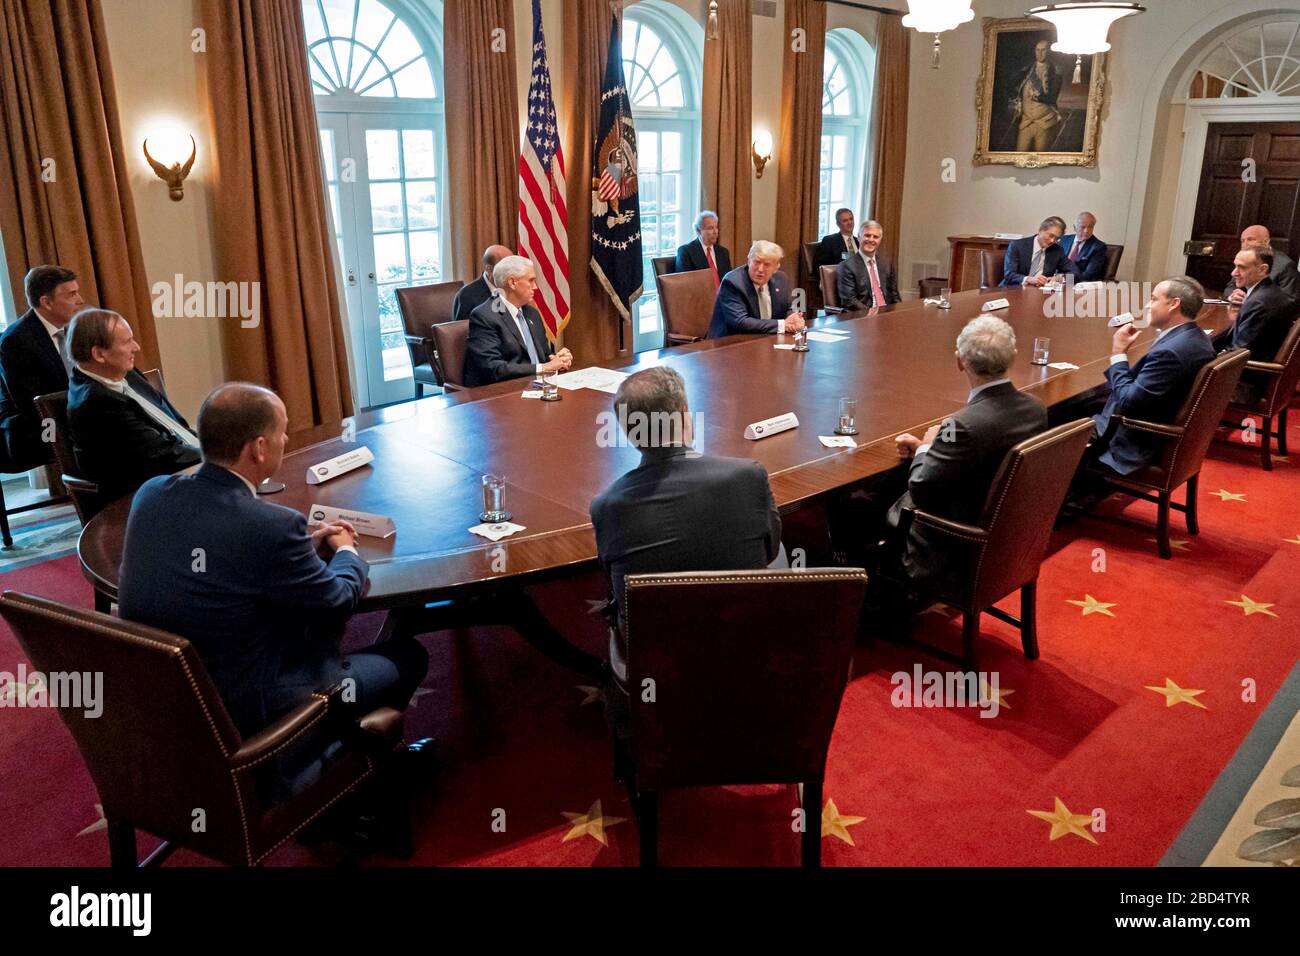 Le président Donald J. Trump, accompagné du vice-président Mike Pence, rencontre des dirigeants de l'industrie touristique pour discuter des soins de santé et des réponses économiques à l'épidémie de coronavirus (COVID-19), le mardi 17 mars 2020, dans la salle du Cabinet de la Maison Blanche. Banque D'Images